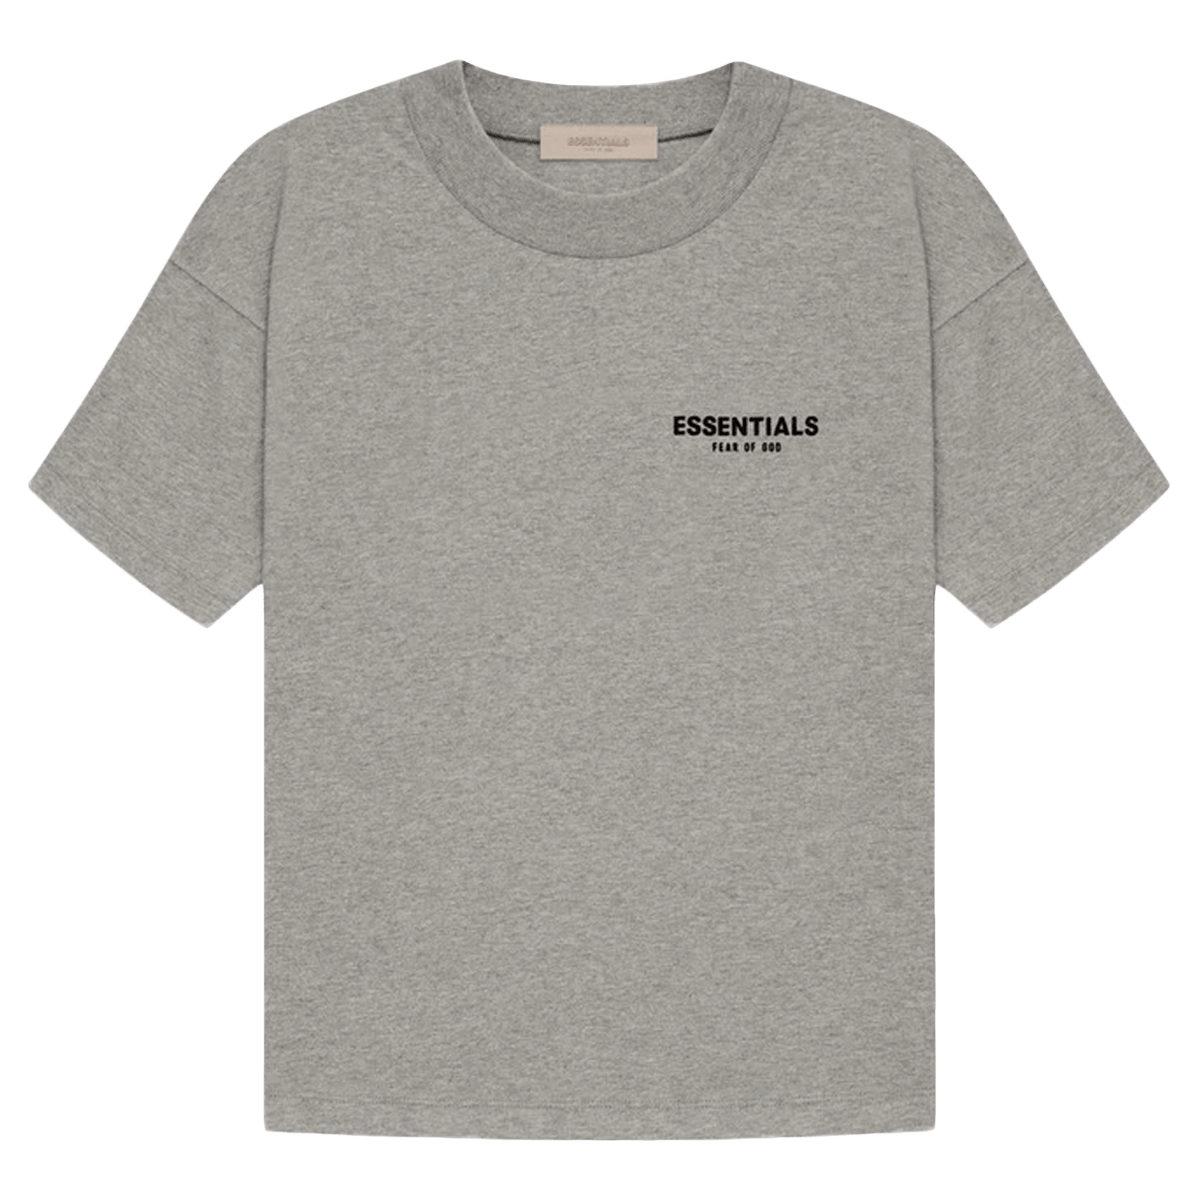 Fear of God Essentials T-shirt 'Dark Oatmeal' - CerbeShops